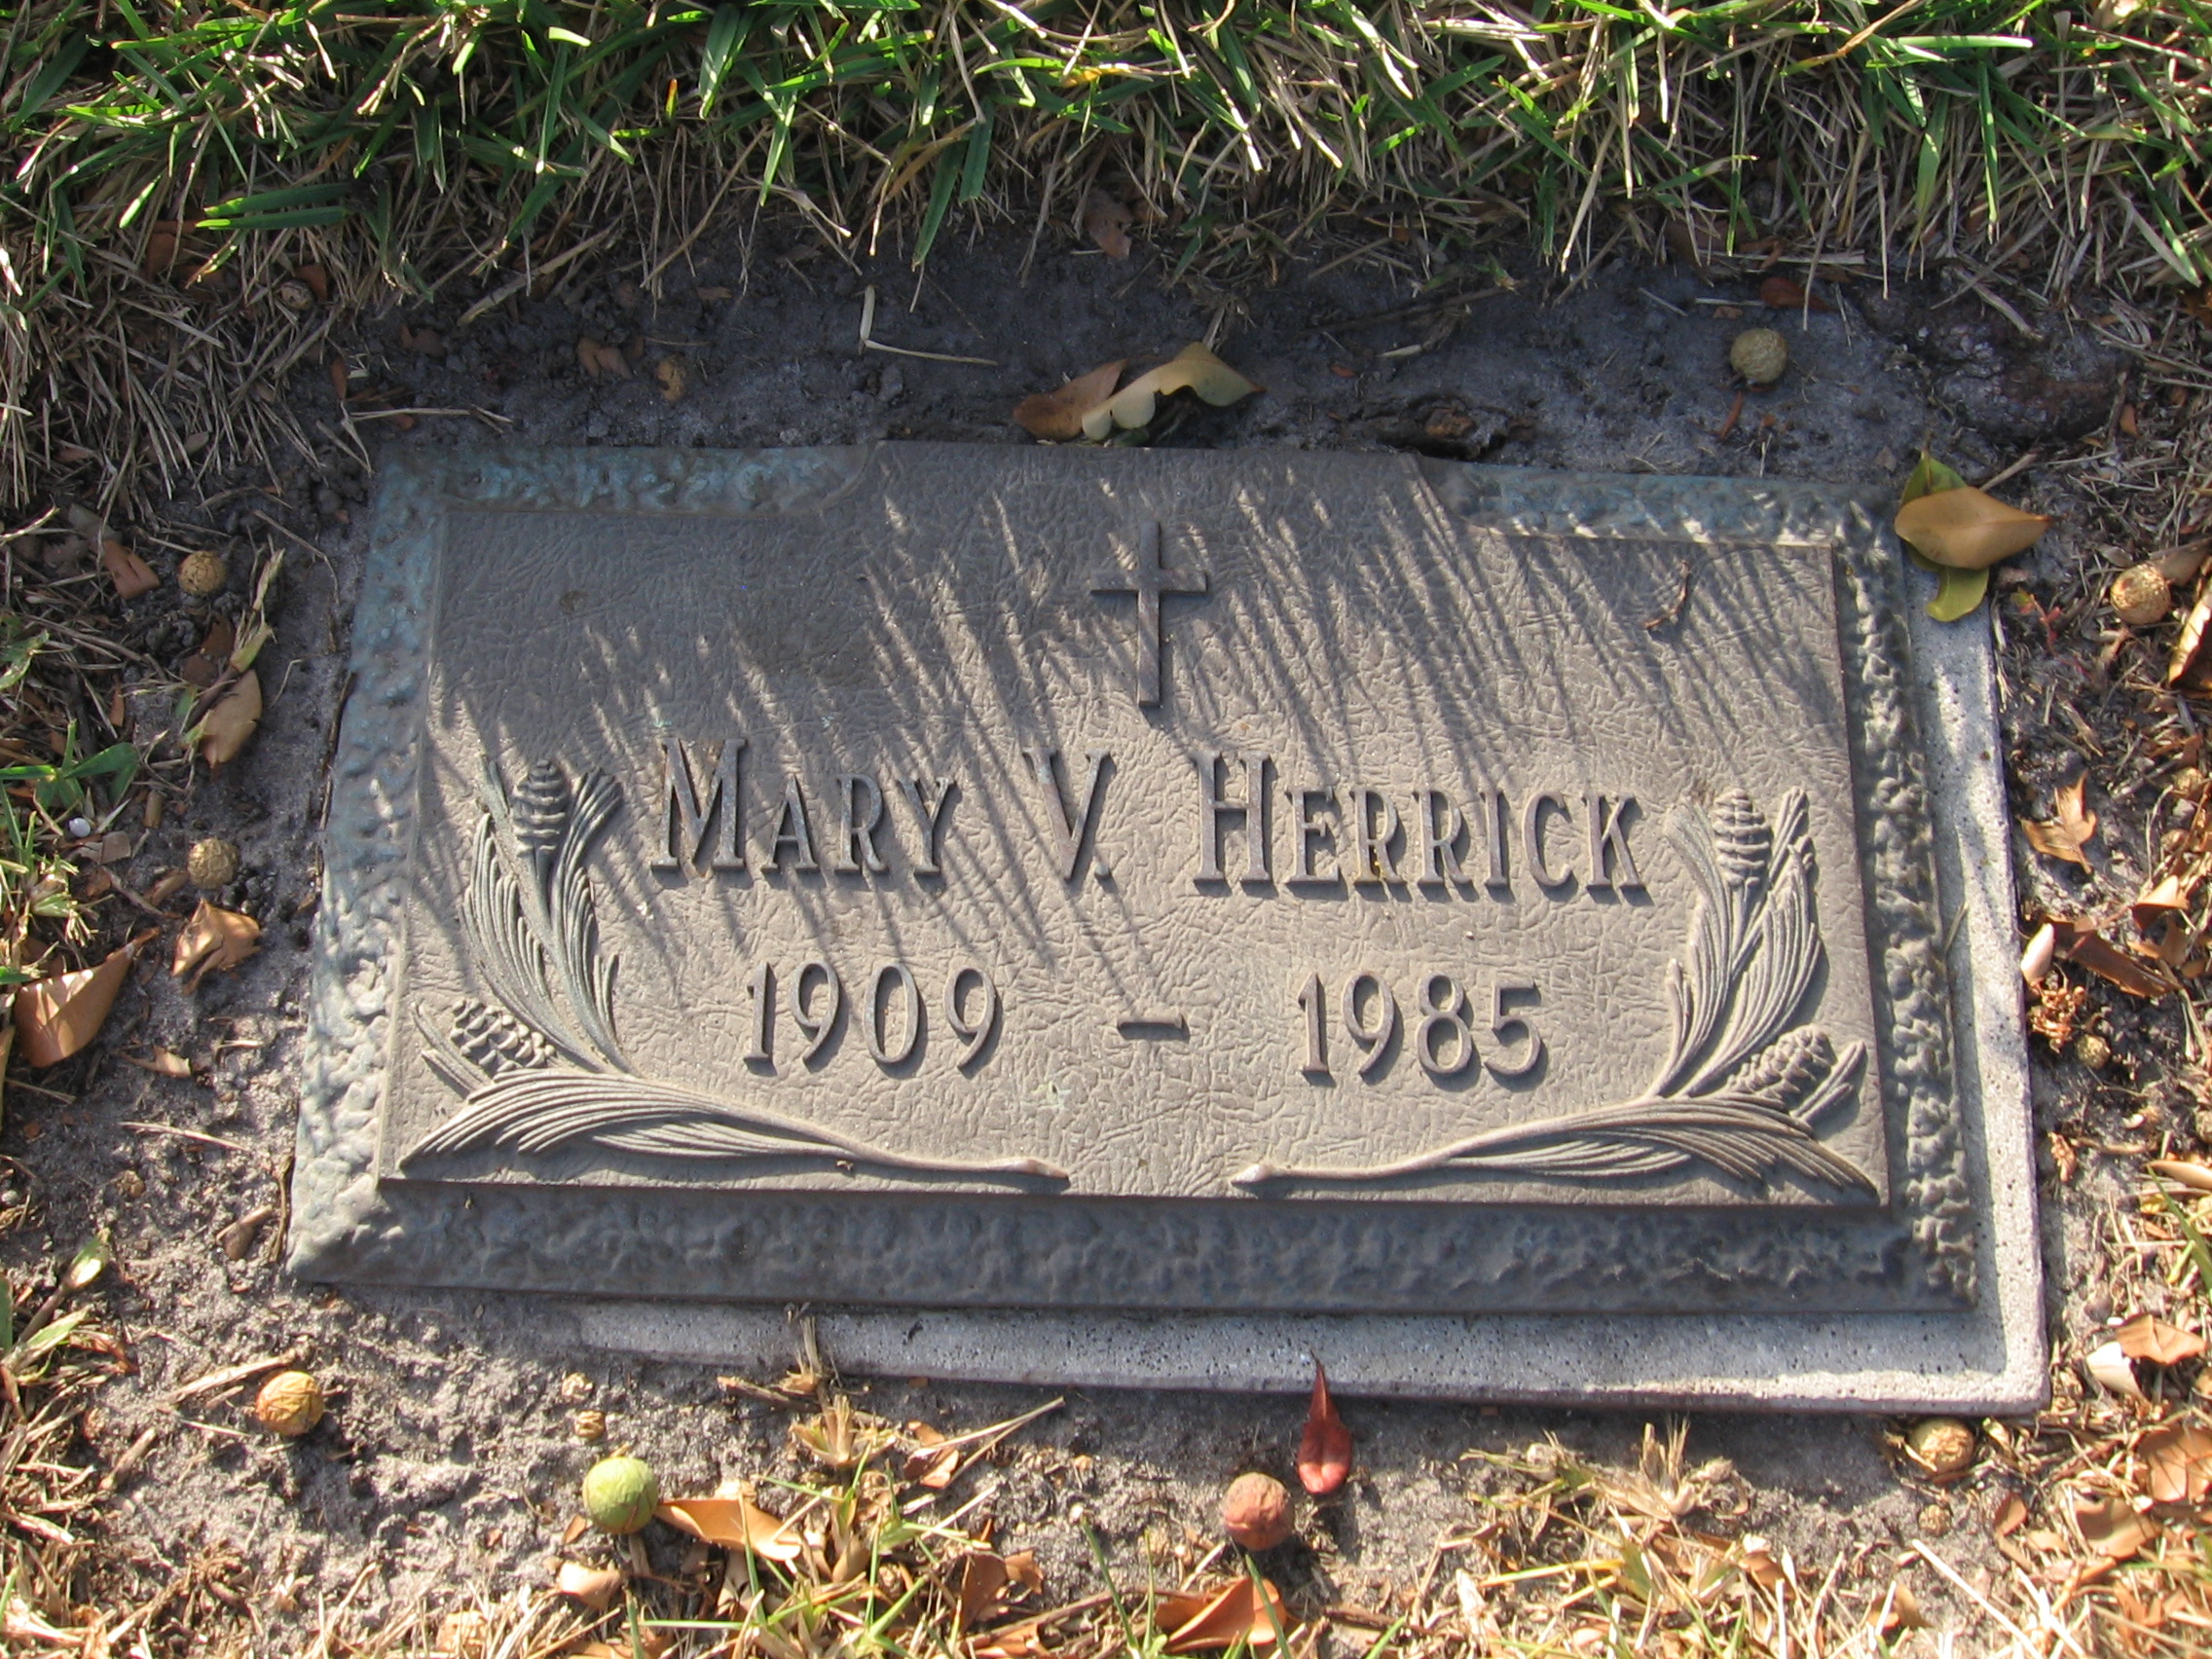 Mary V Herrick